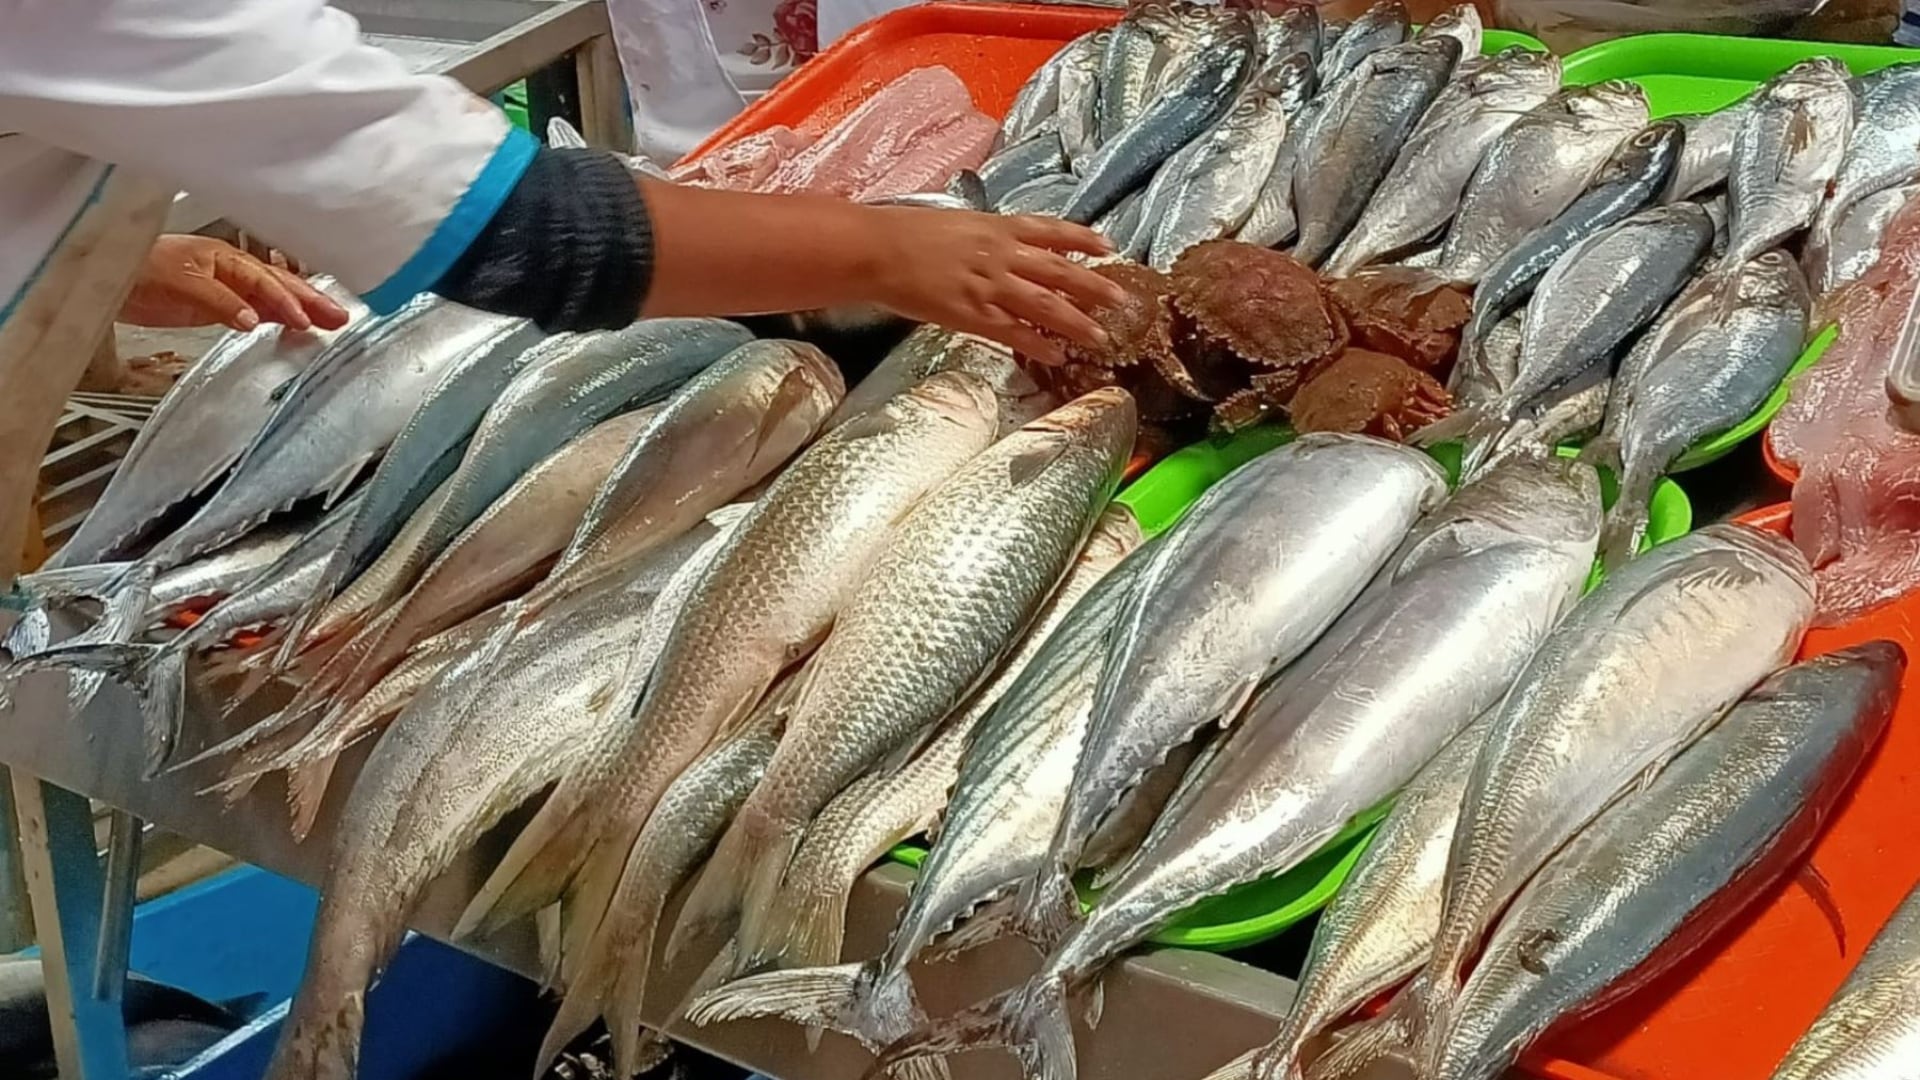 La Semana Santa en Perú marca un cambio en la dieta hacia el consumo de productos marinos, impulsando una importante actividad comercial en los mercados de pescados y mariscos. (Andina)